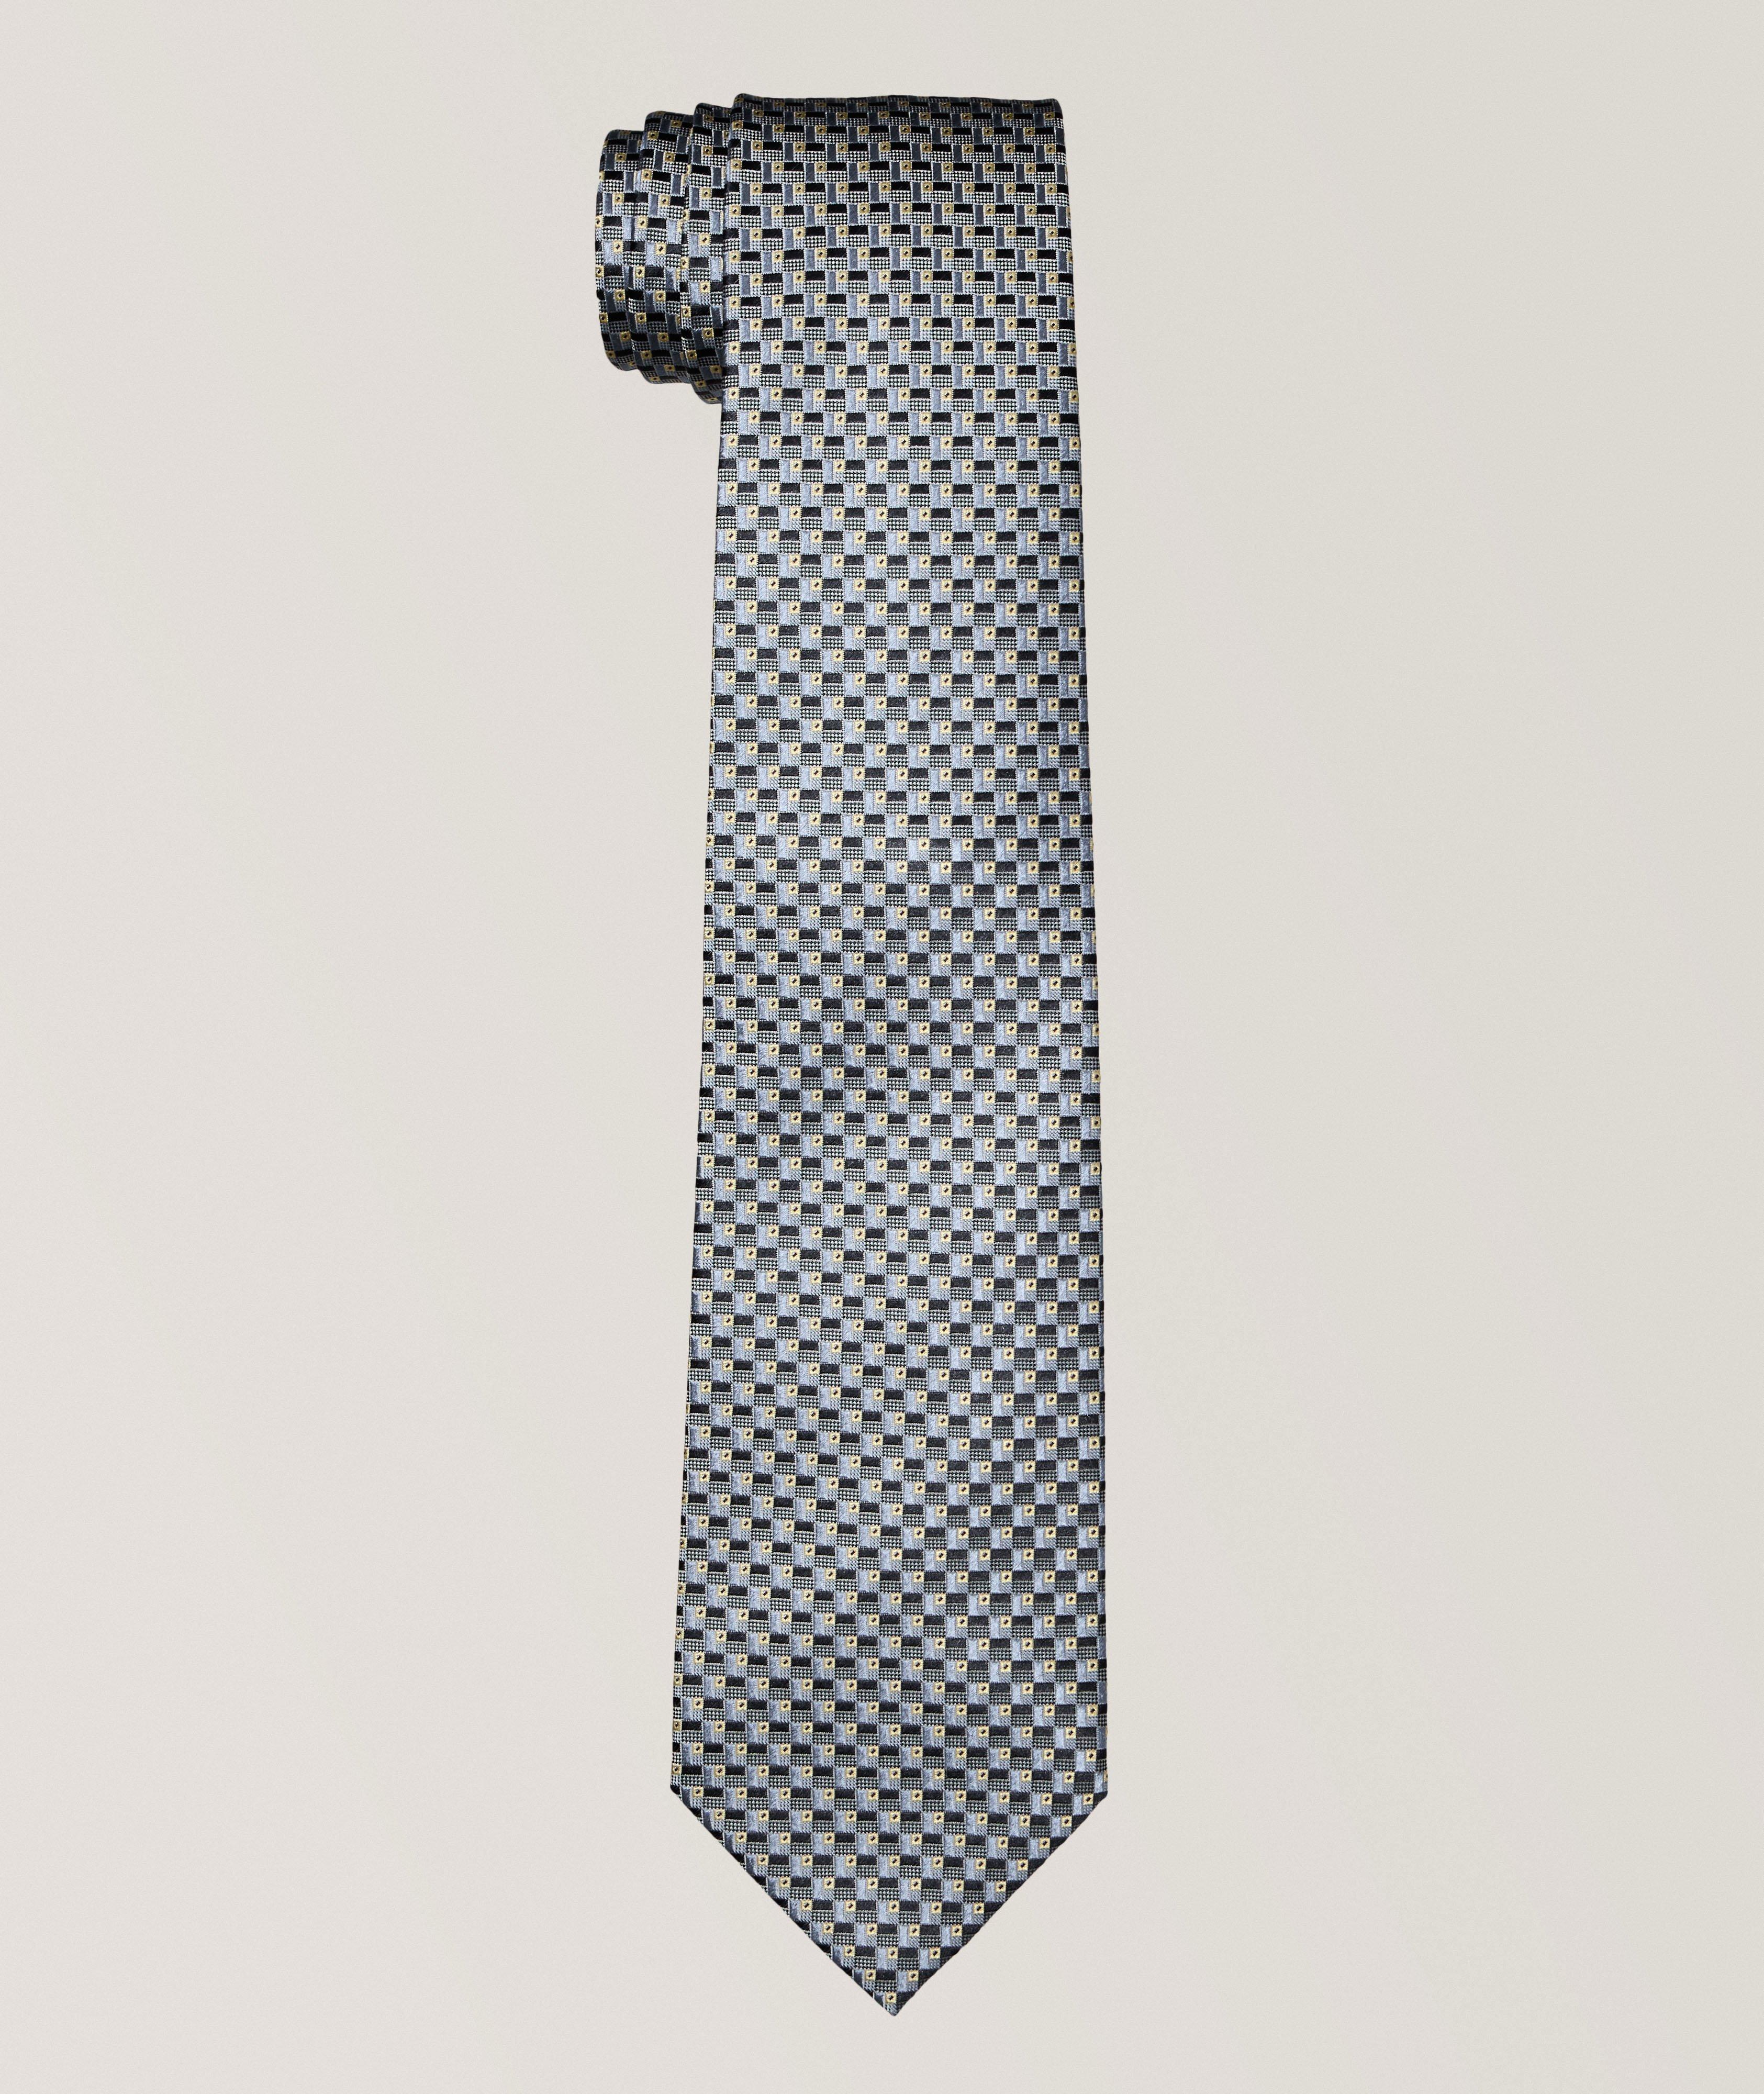 Cravate en soie à motif répété image 0